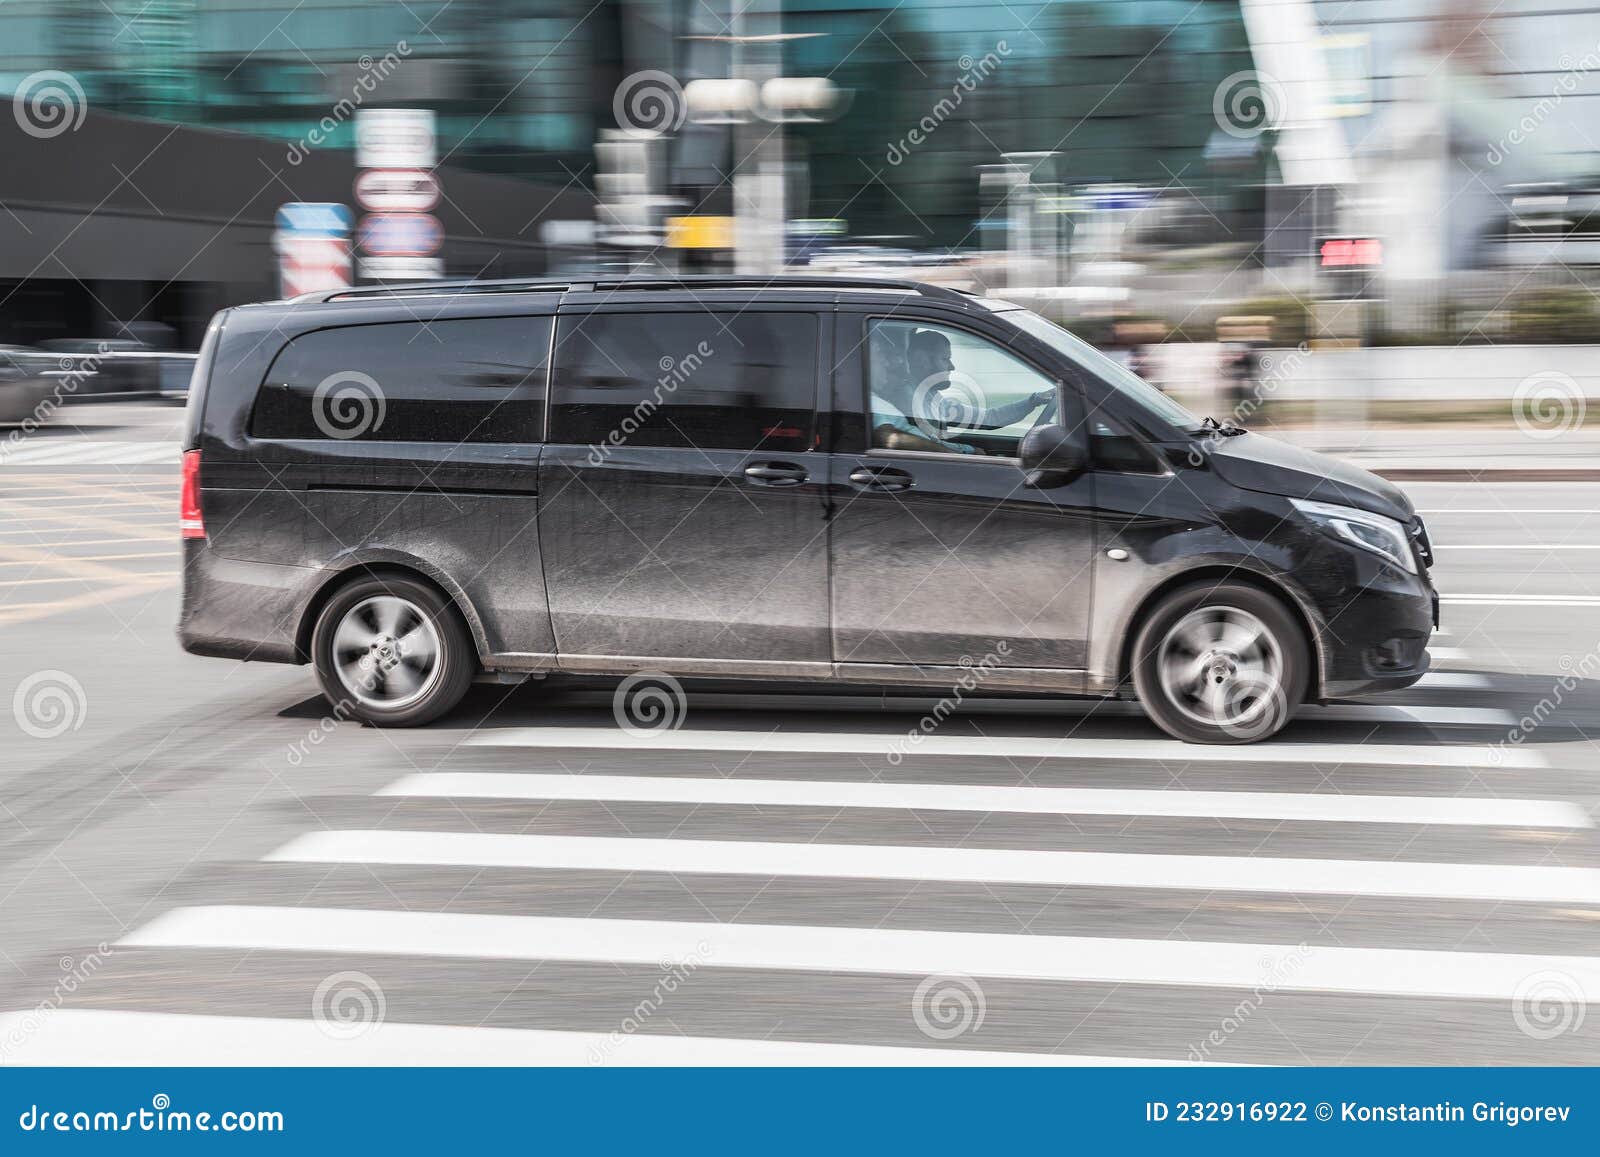 Black passenger van Mercedes Benz W447 Viano in the city street in